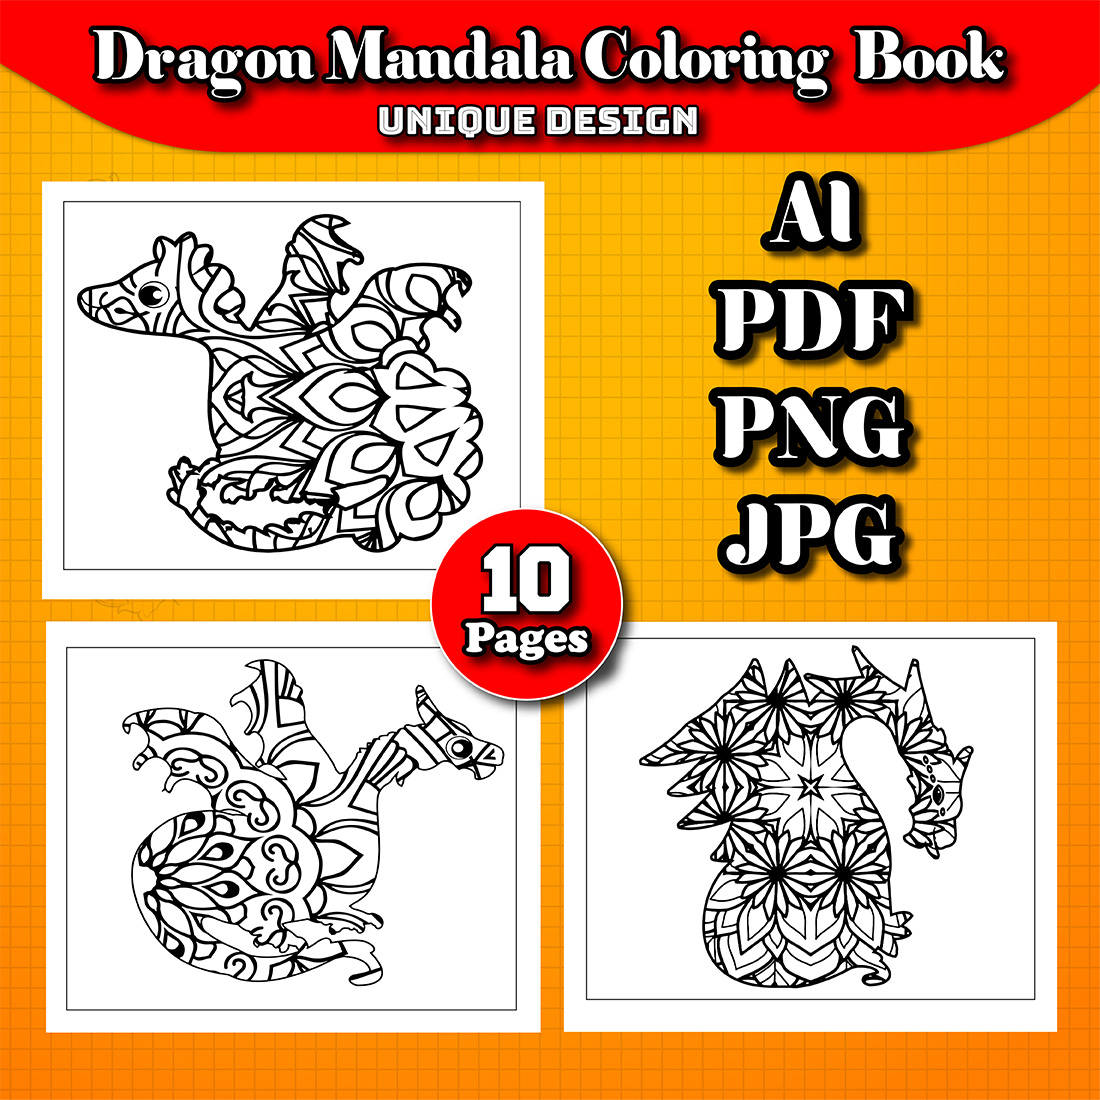 preview image Dragon Mandala Coloring Book.